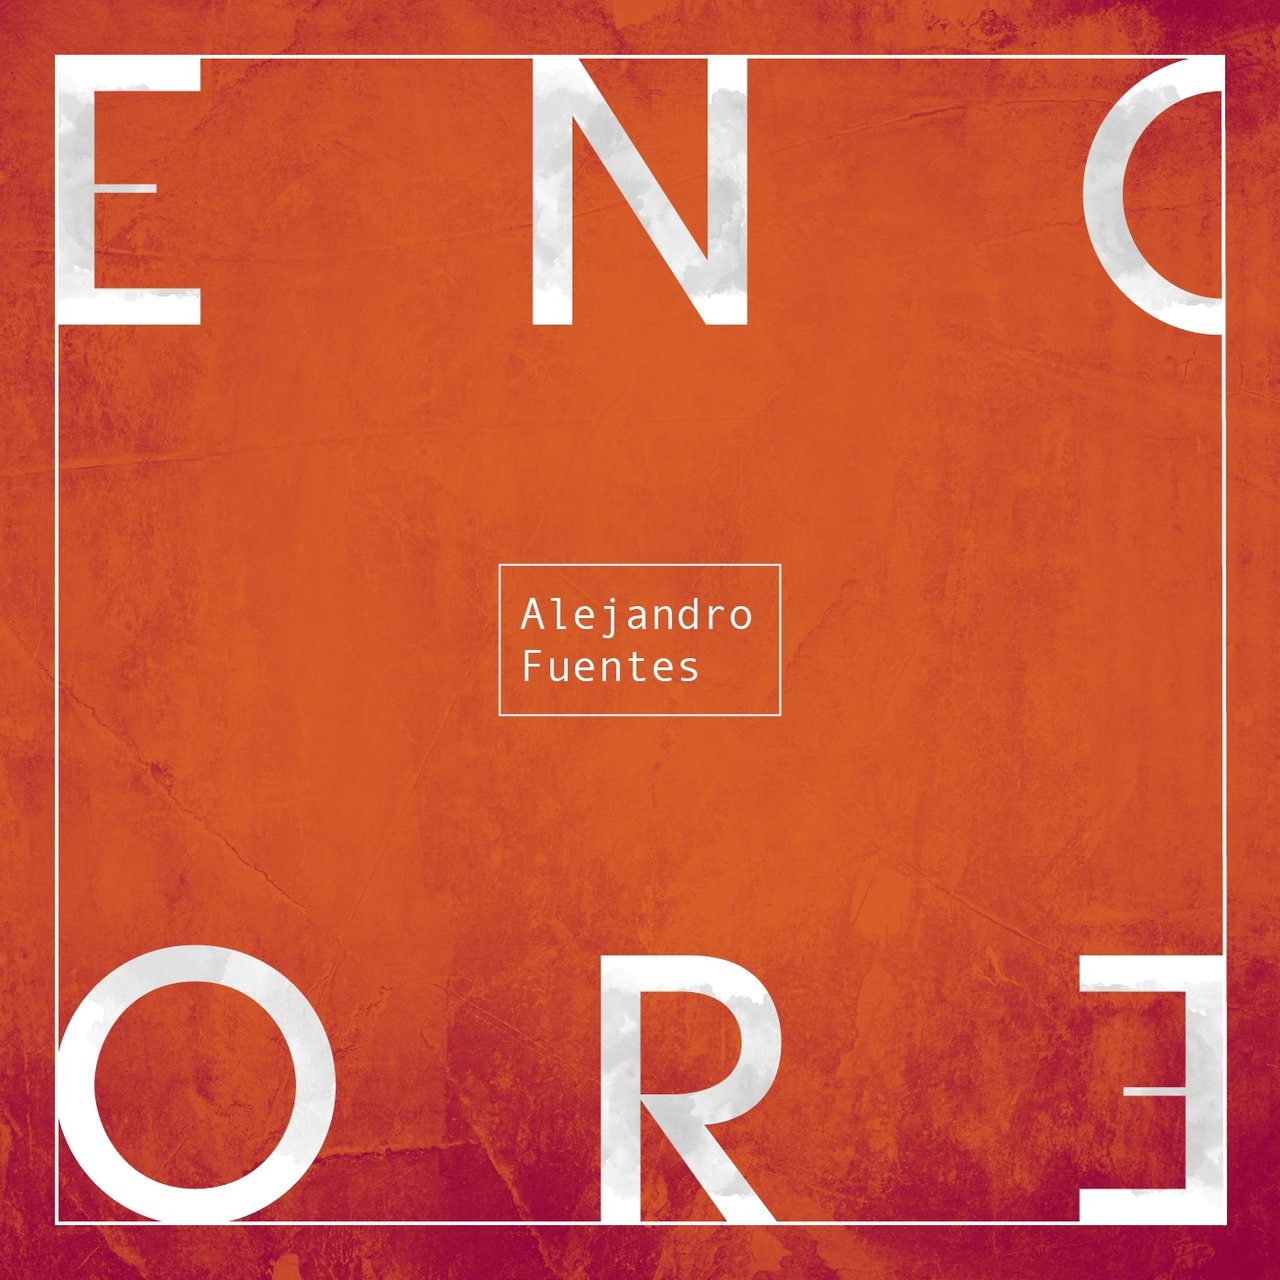 Alejandro Fuentes — Encore cover artwork